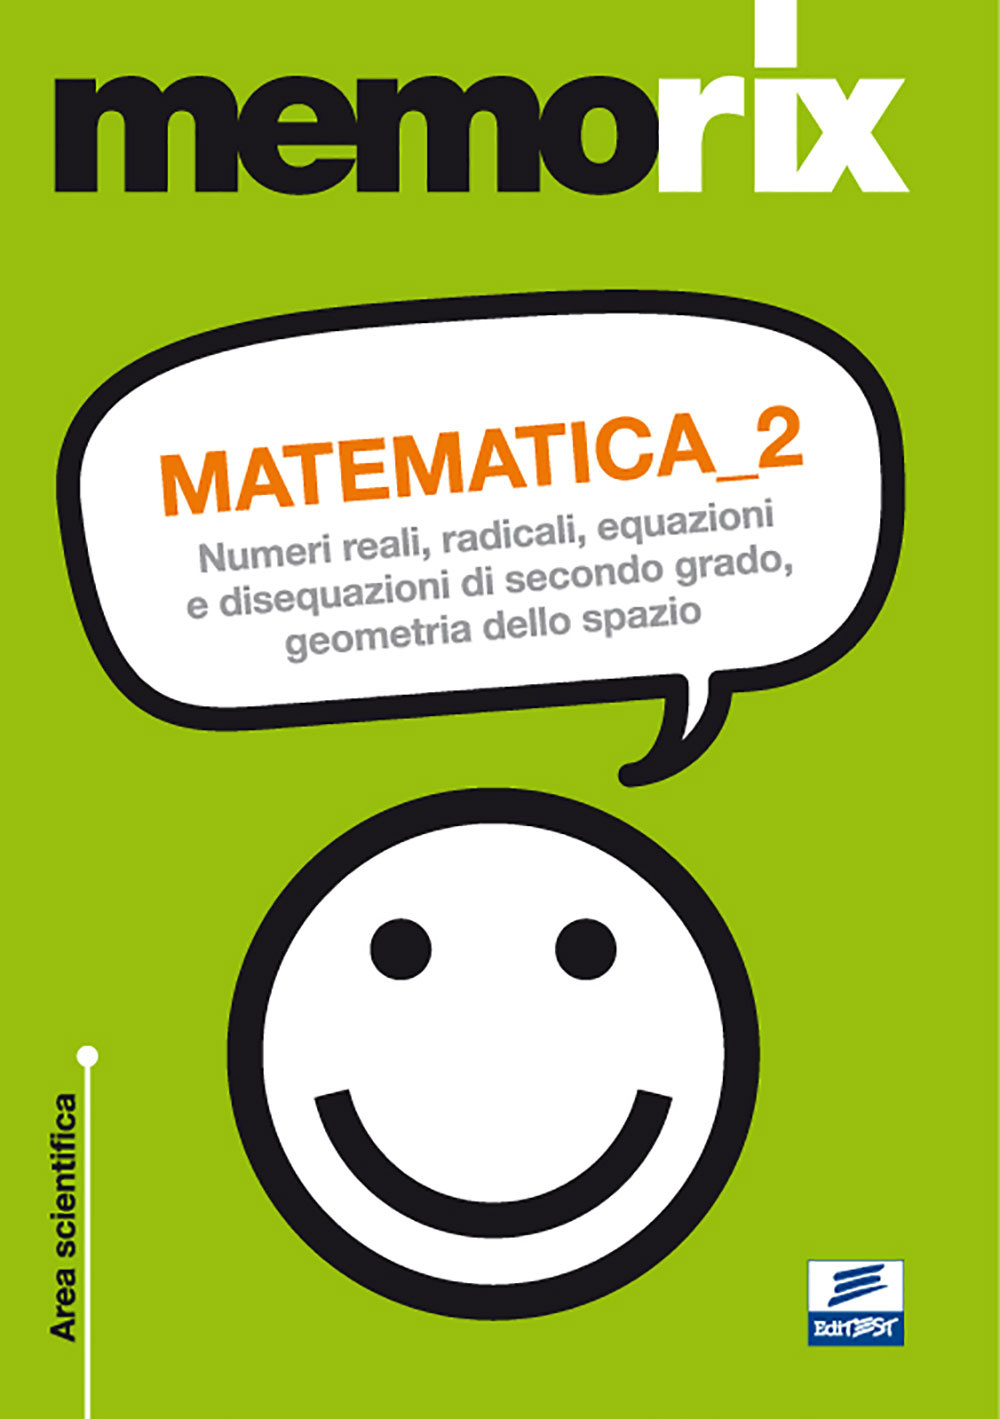 Matematica. Numeri reali, radicali, equazioni e disequazioni di secondo grado, geometria dello spazio. Vol. 2